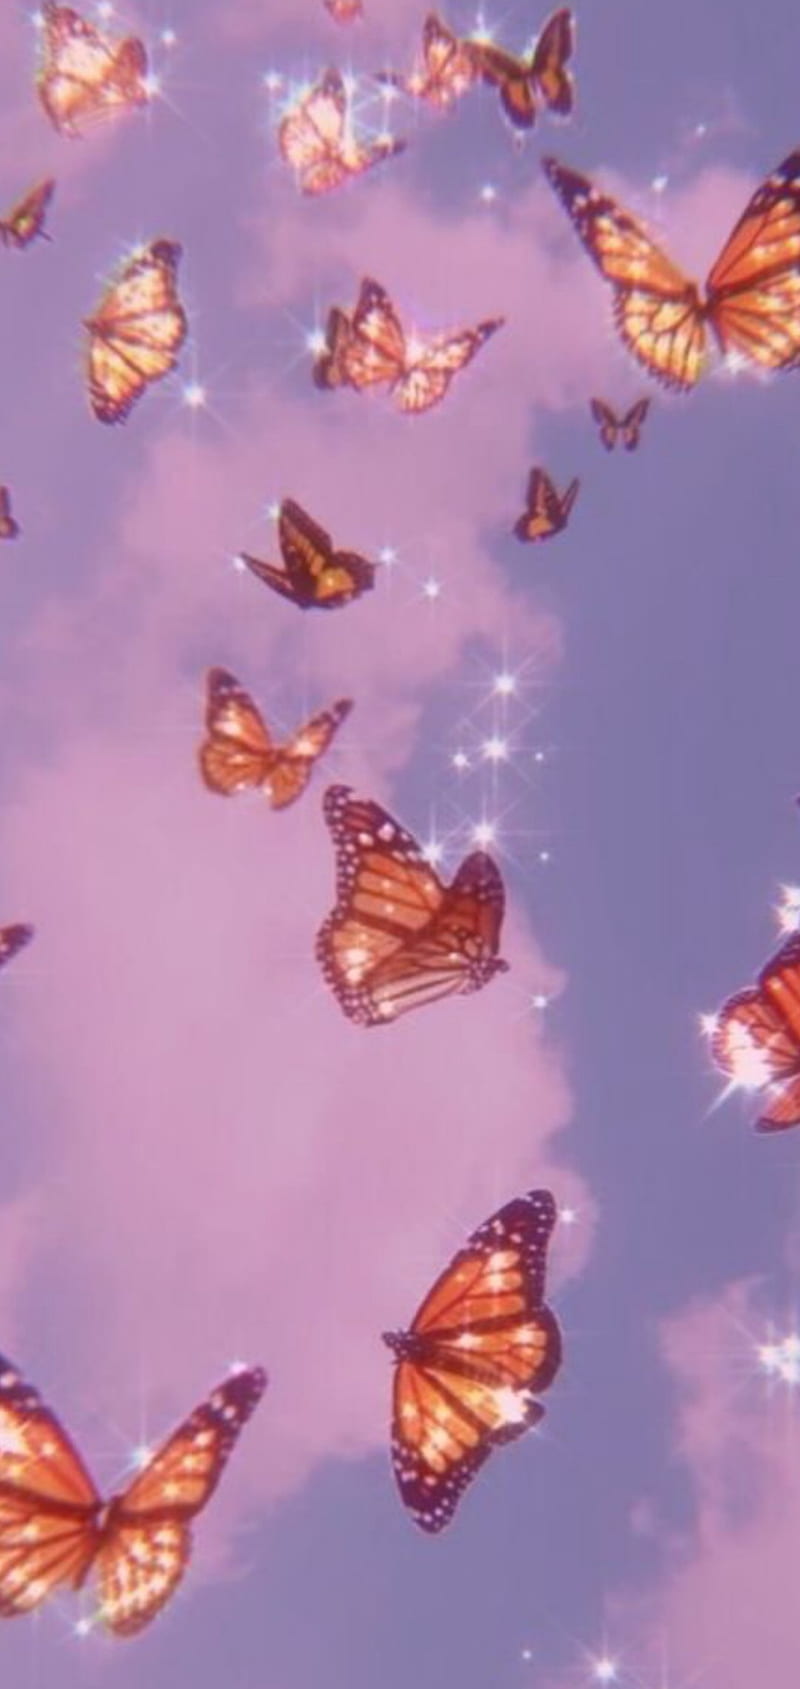 Butterflies flying in the sky wallpaper - Butterfly